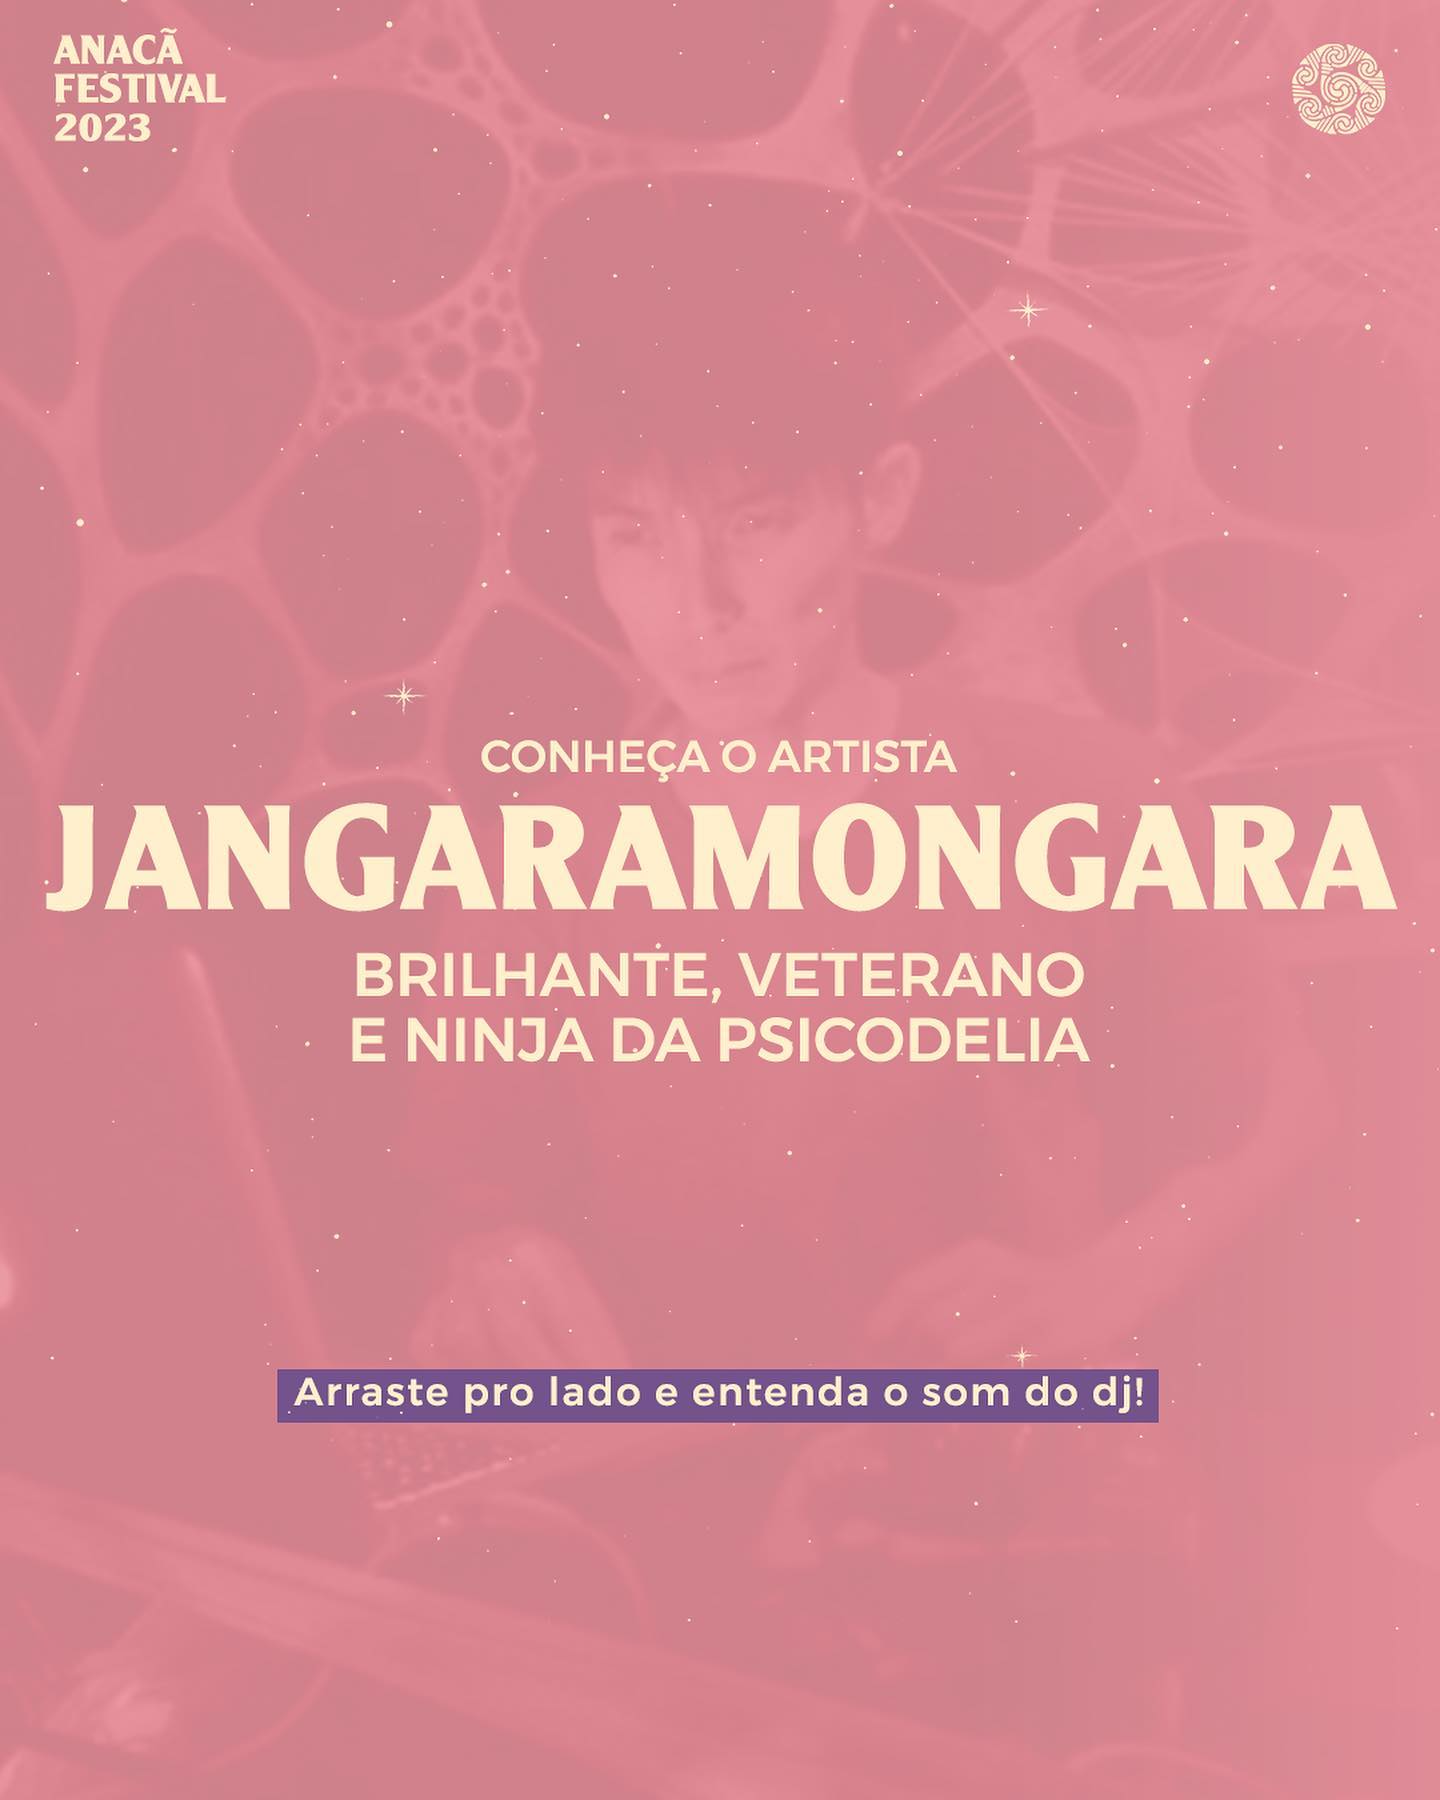 Jangaramongara